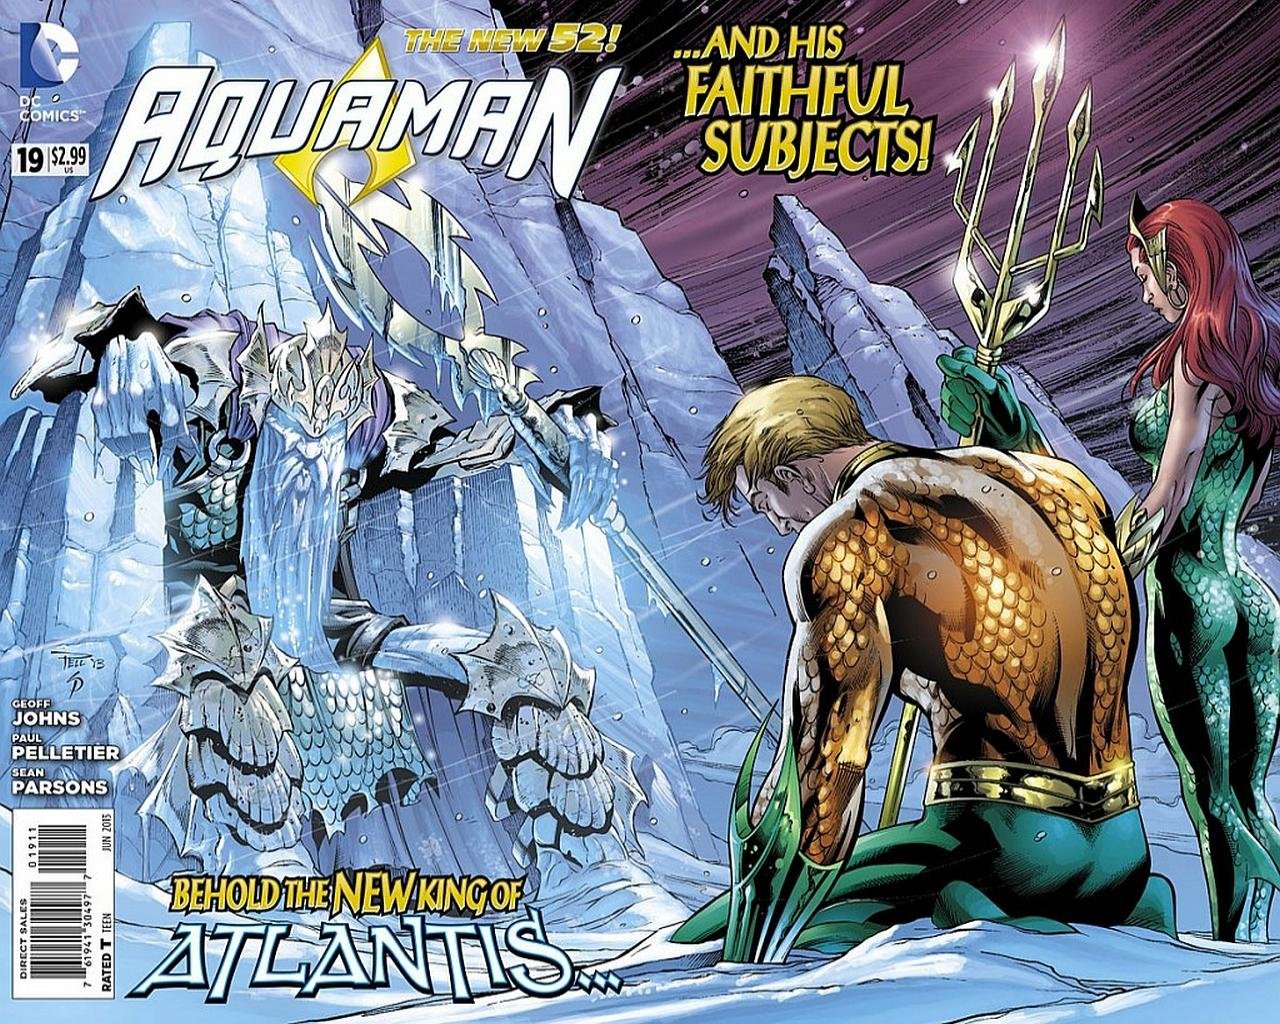 Download hd 1280x1024 Aquaman computer wallpaper ID:89064 for free